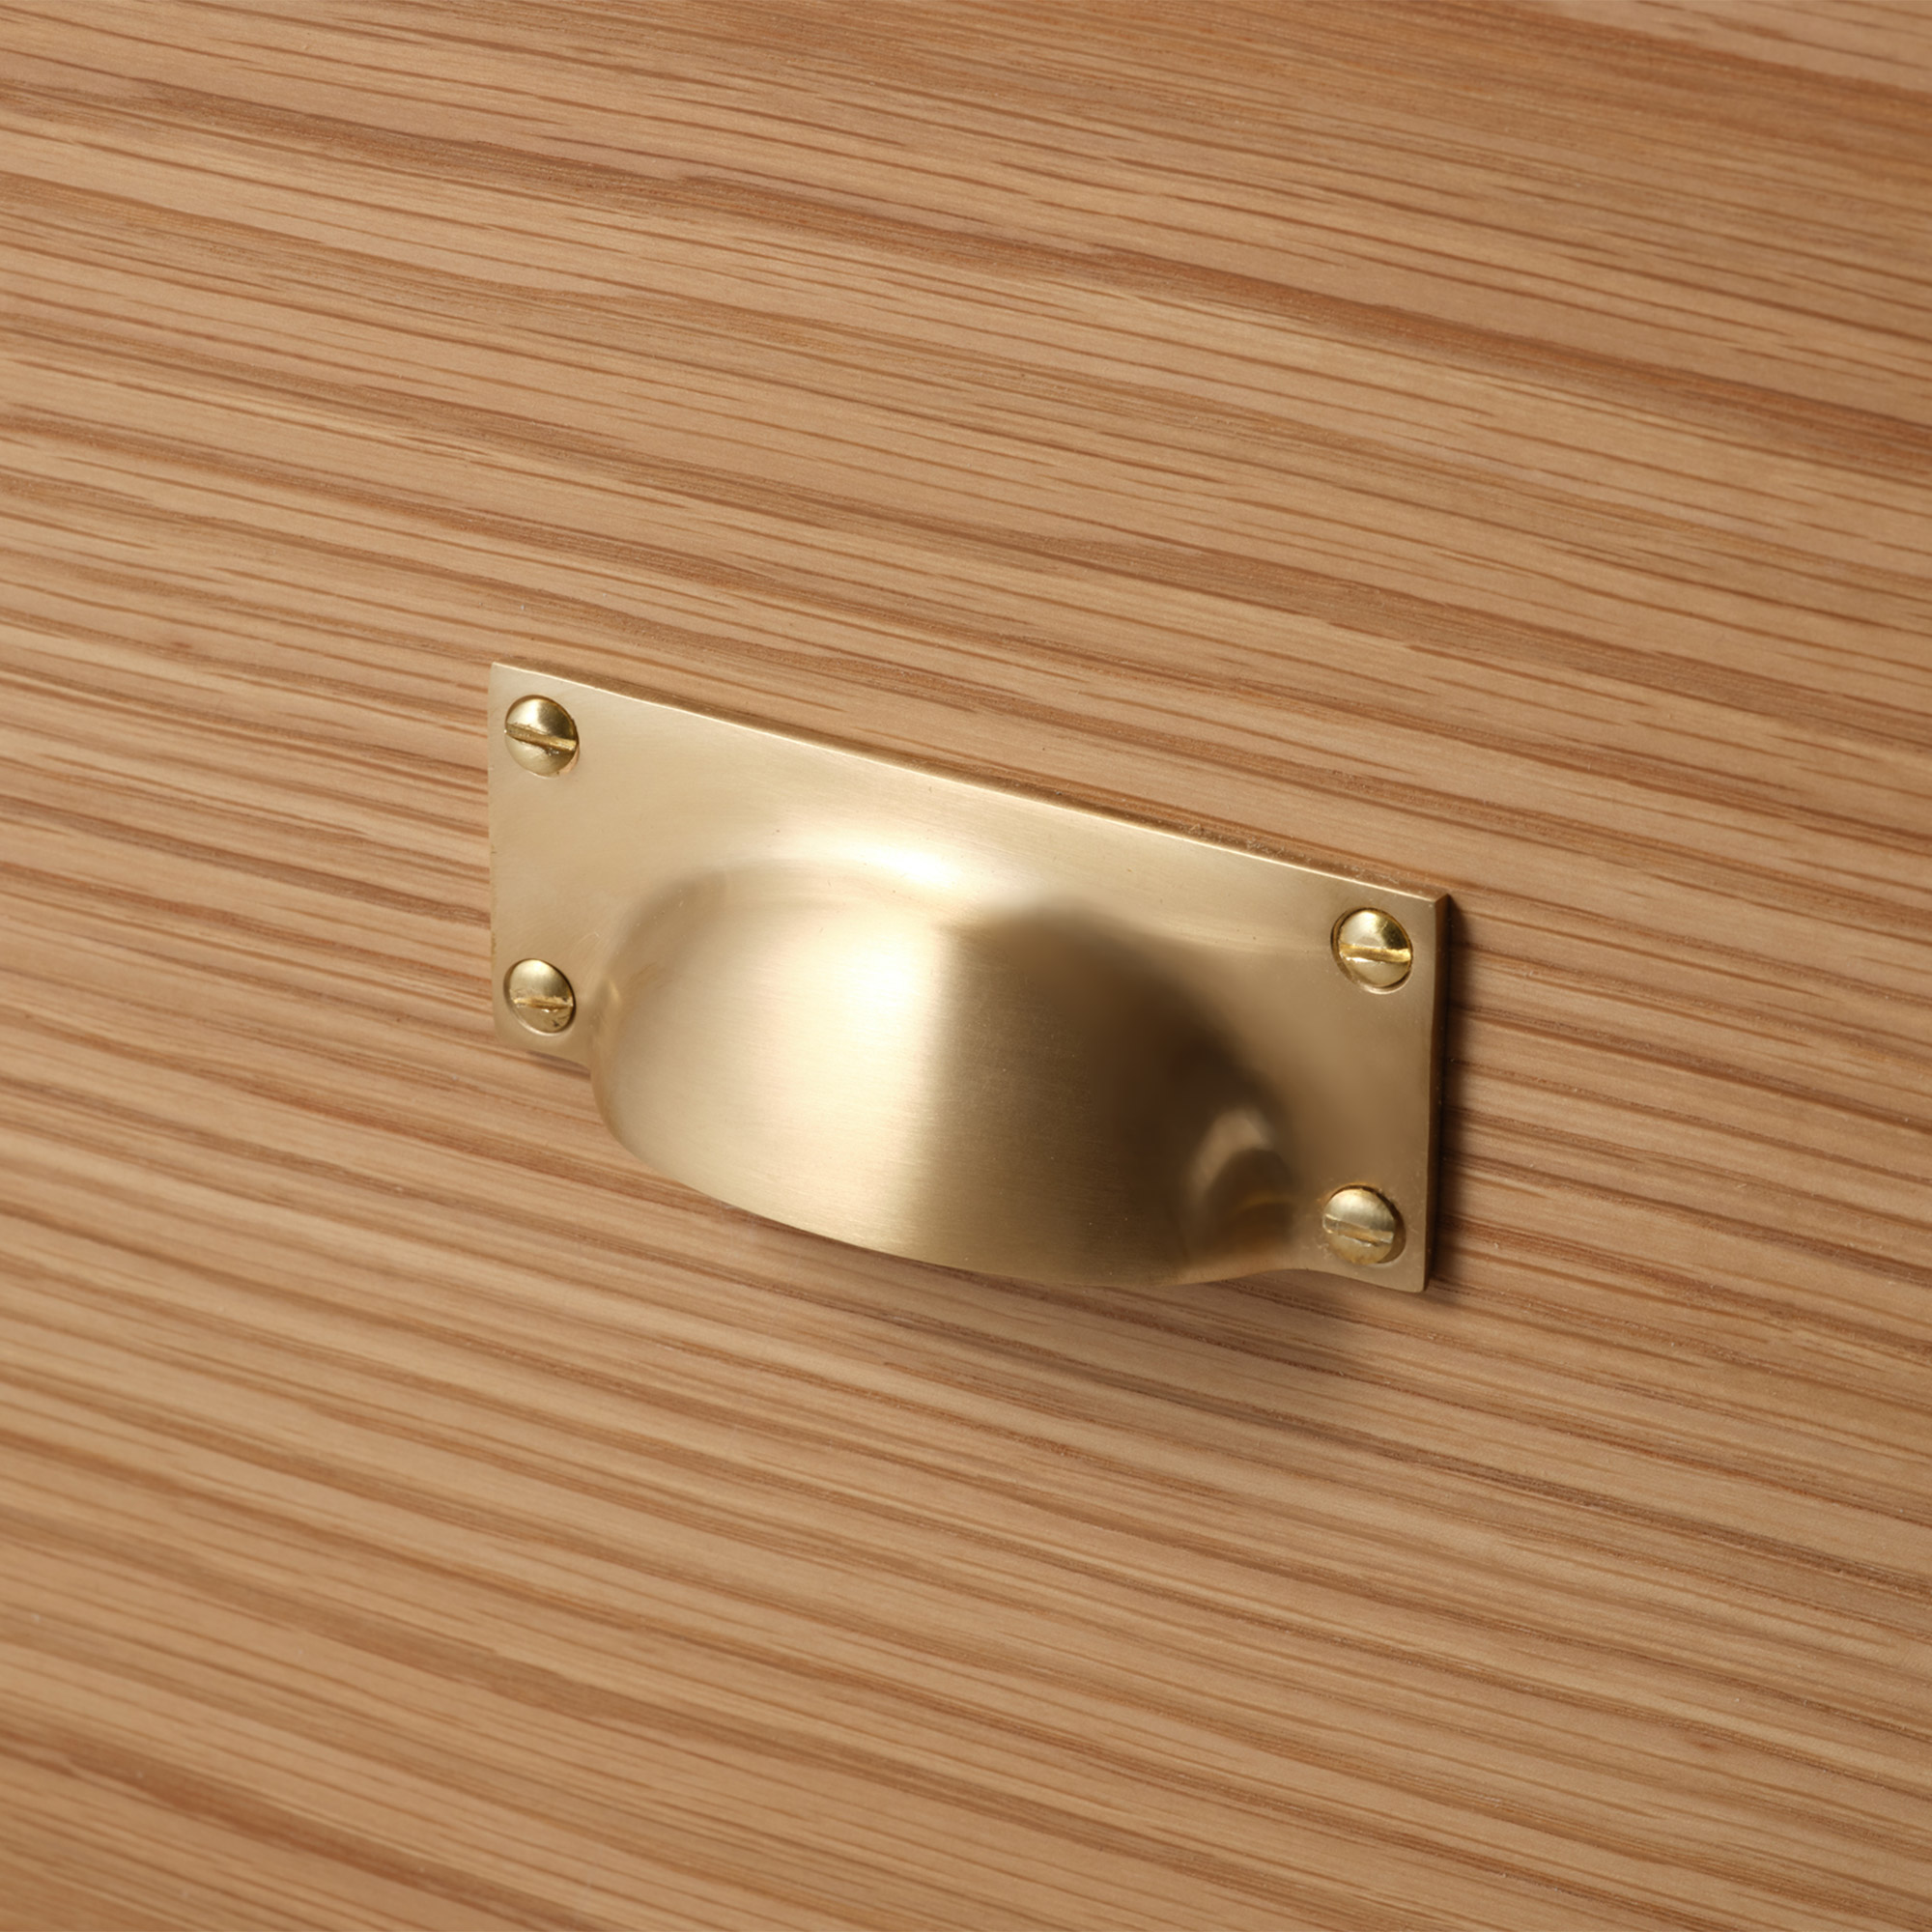 鋳物キッチン把手 スクエアカップ 真鍮 PS-HD018-12-G141 オーク材と合わせたイメージ